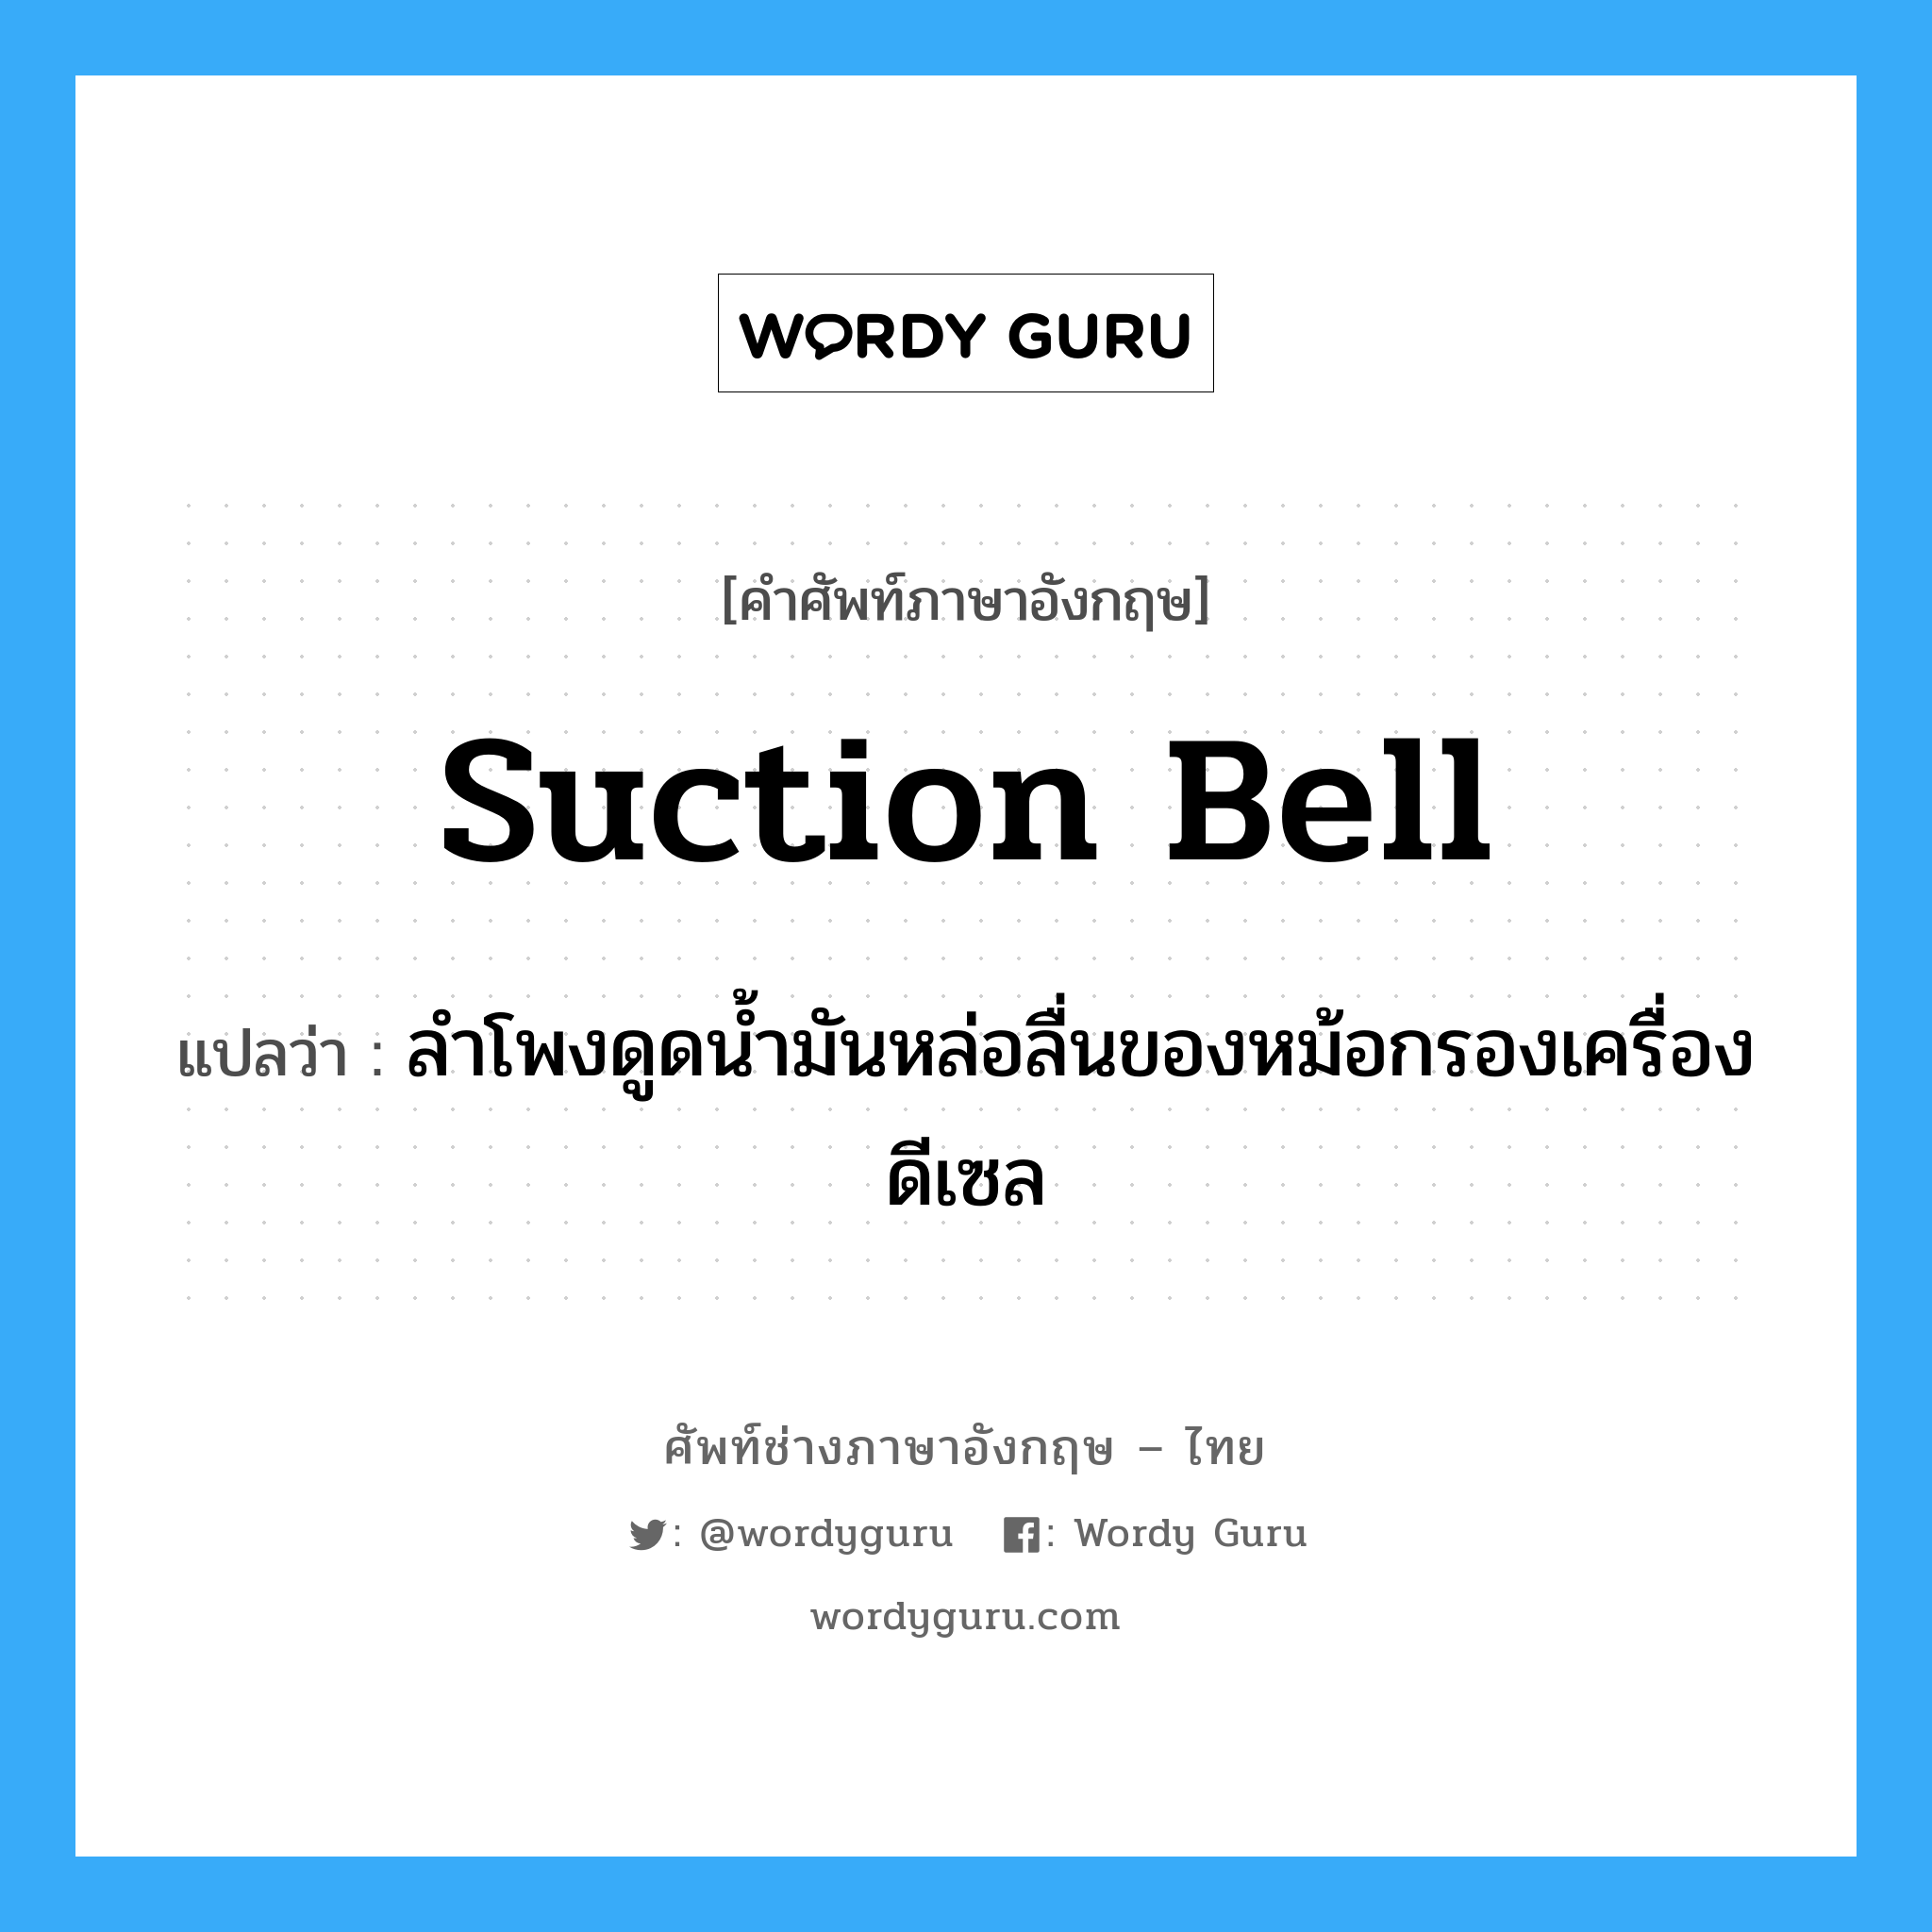 suction bell แปลว่า?, คำศัพท์ช่างภาษาอังกฤษ - ไทย suction bell คำศัพท์ภาษาอังกฤษ suction bell แปลว่า ลำโพงดูดน้ำมันหล่อลื่นของหม้อกรองเครื่องดีเซล